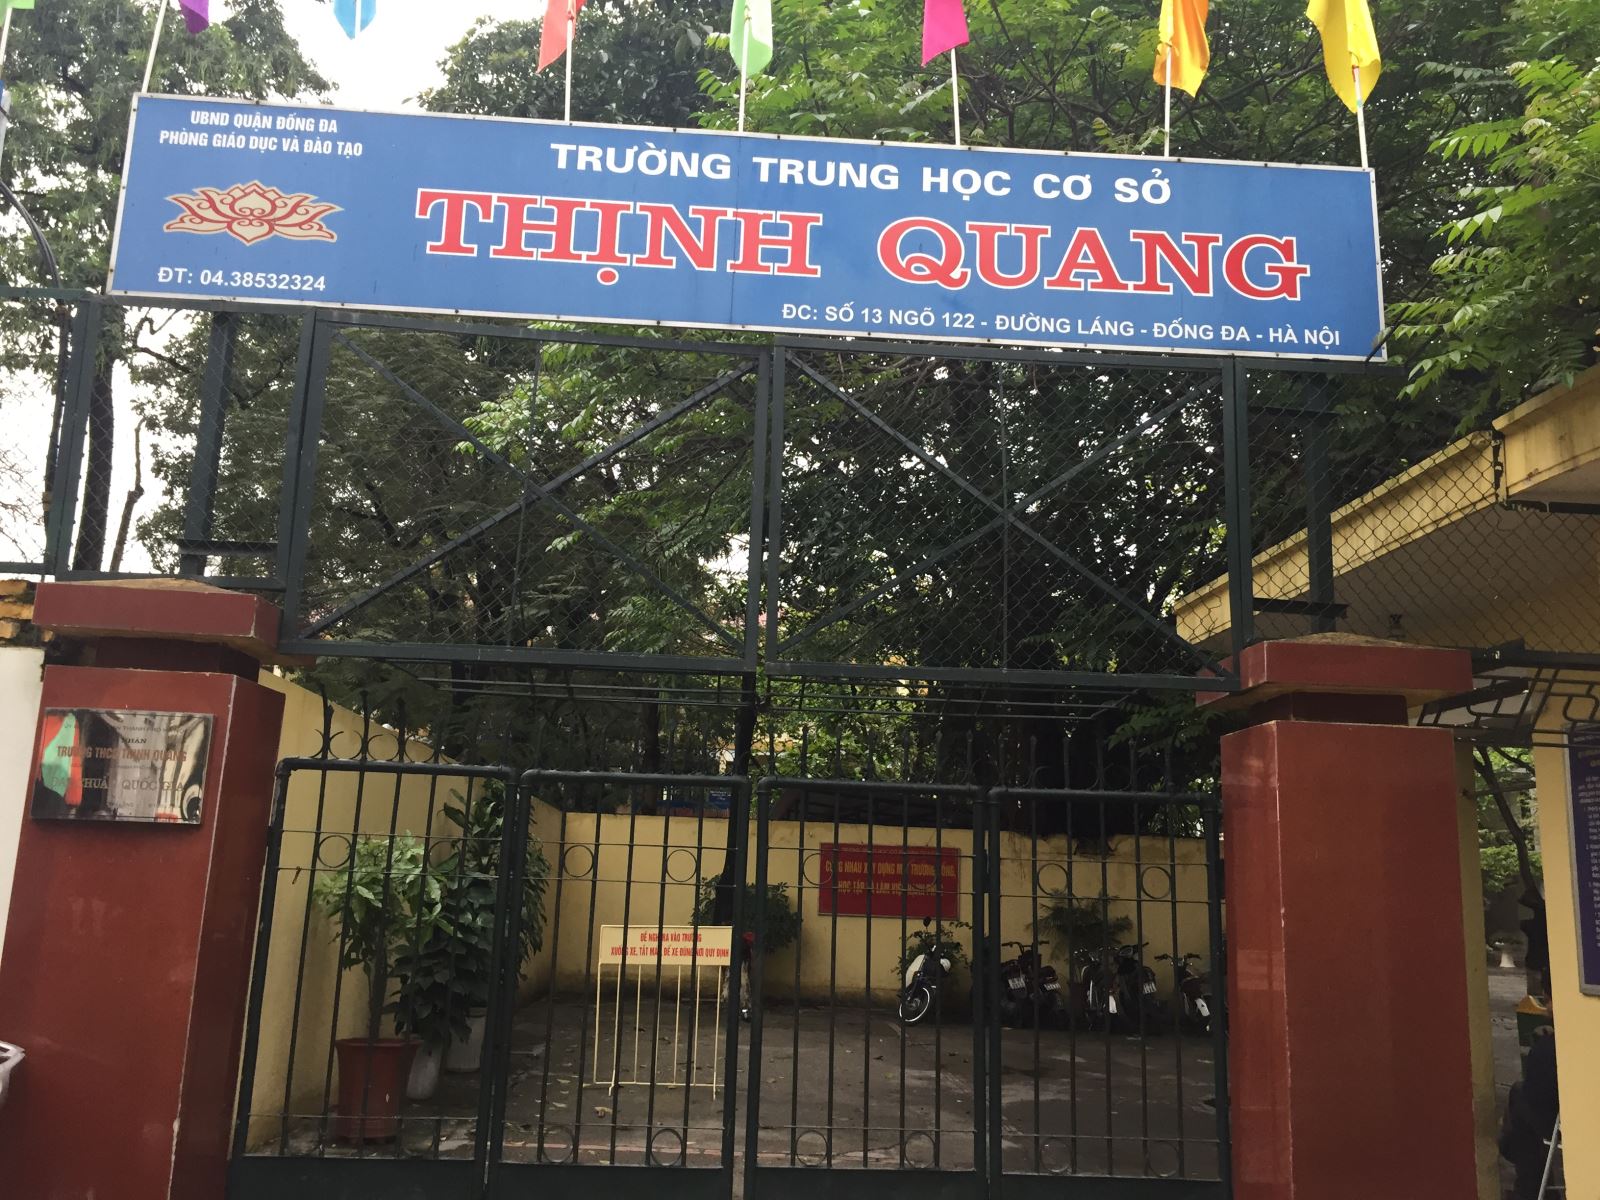 Trường THCS Thịnh Quang